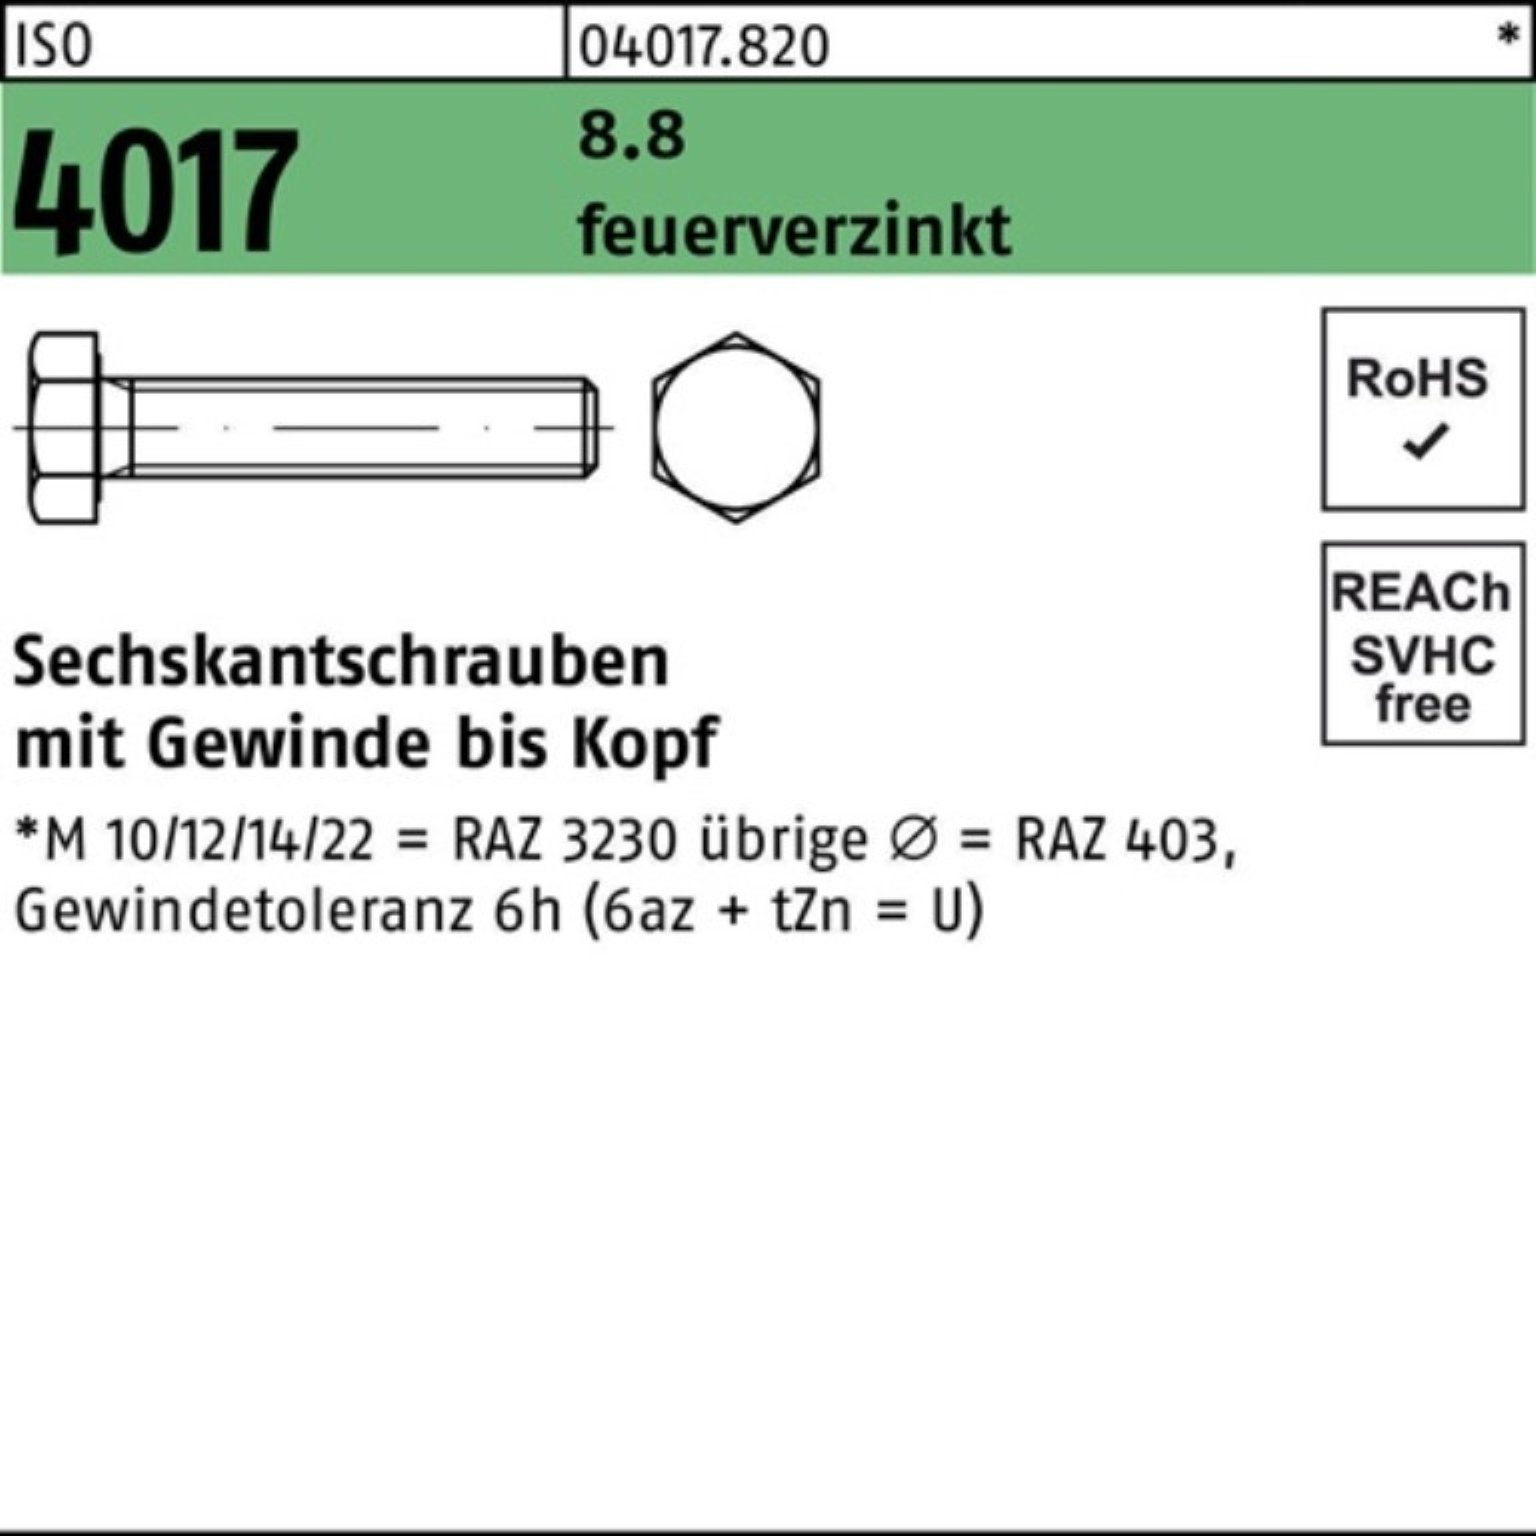 4017 200er Pack VG ISO Bufab feuerverz. 8.8 200 Sechskantschraube Sechskantschraube 80 M8x St